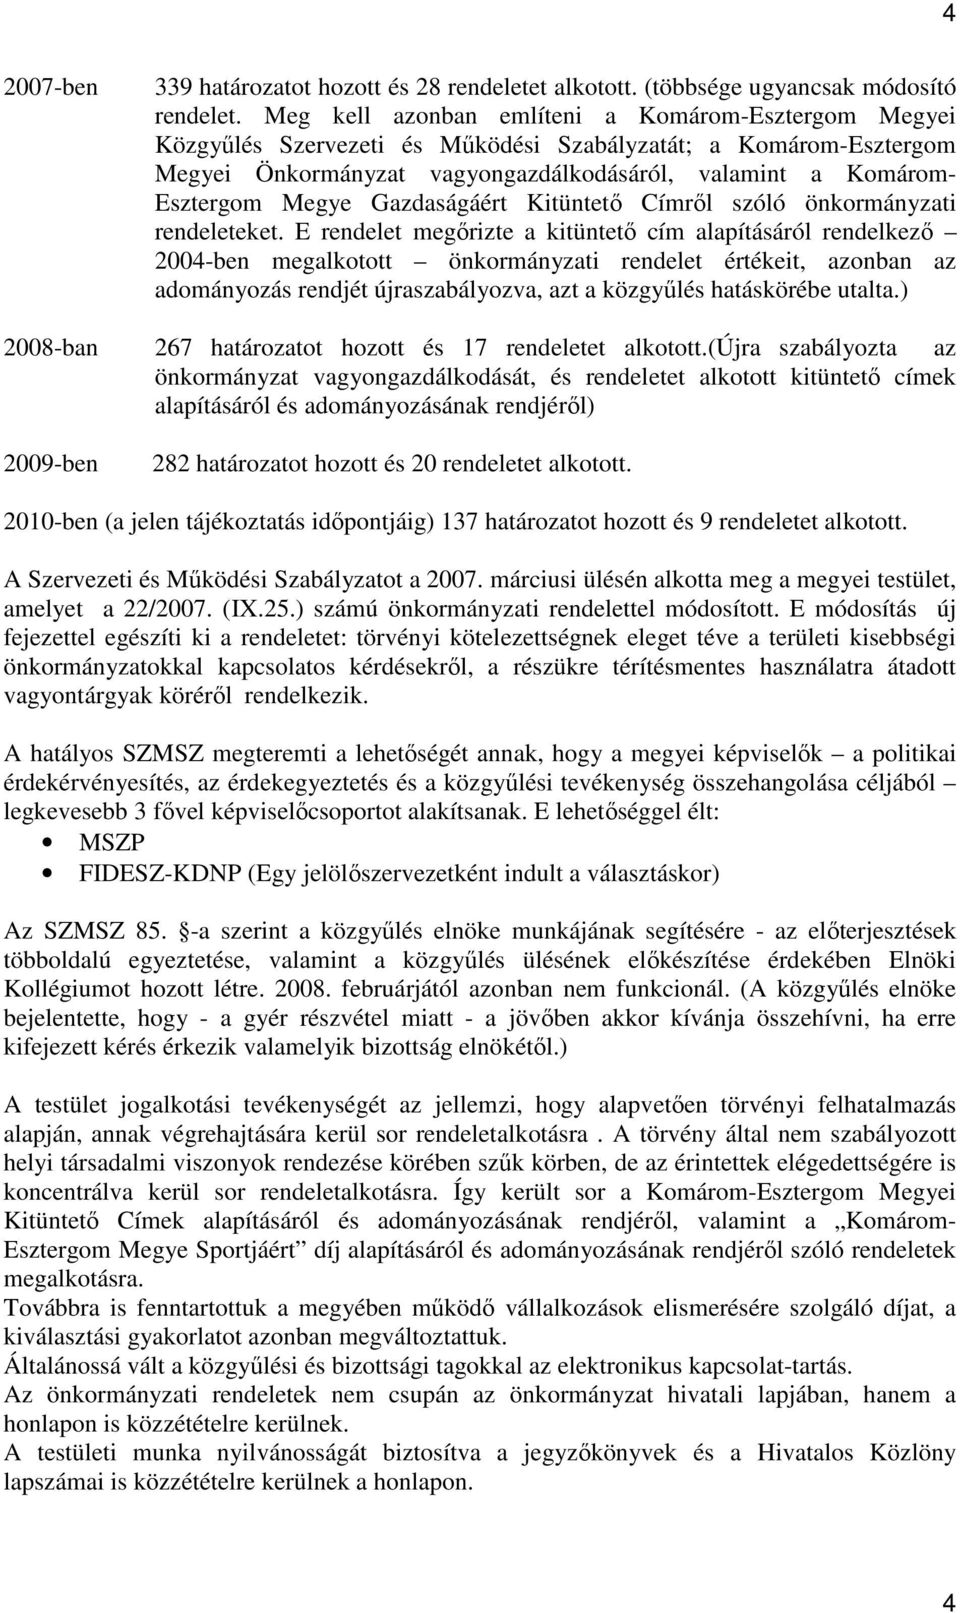 Gazdaságáért Kitüntetı Címrıl szóló önkormányzati rendeleteket.